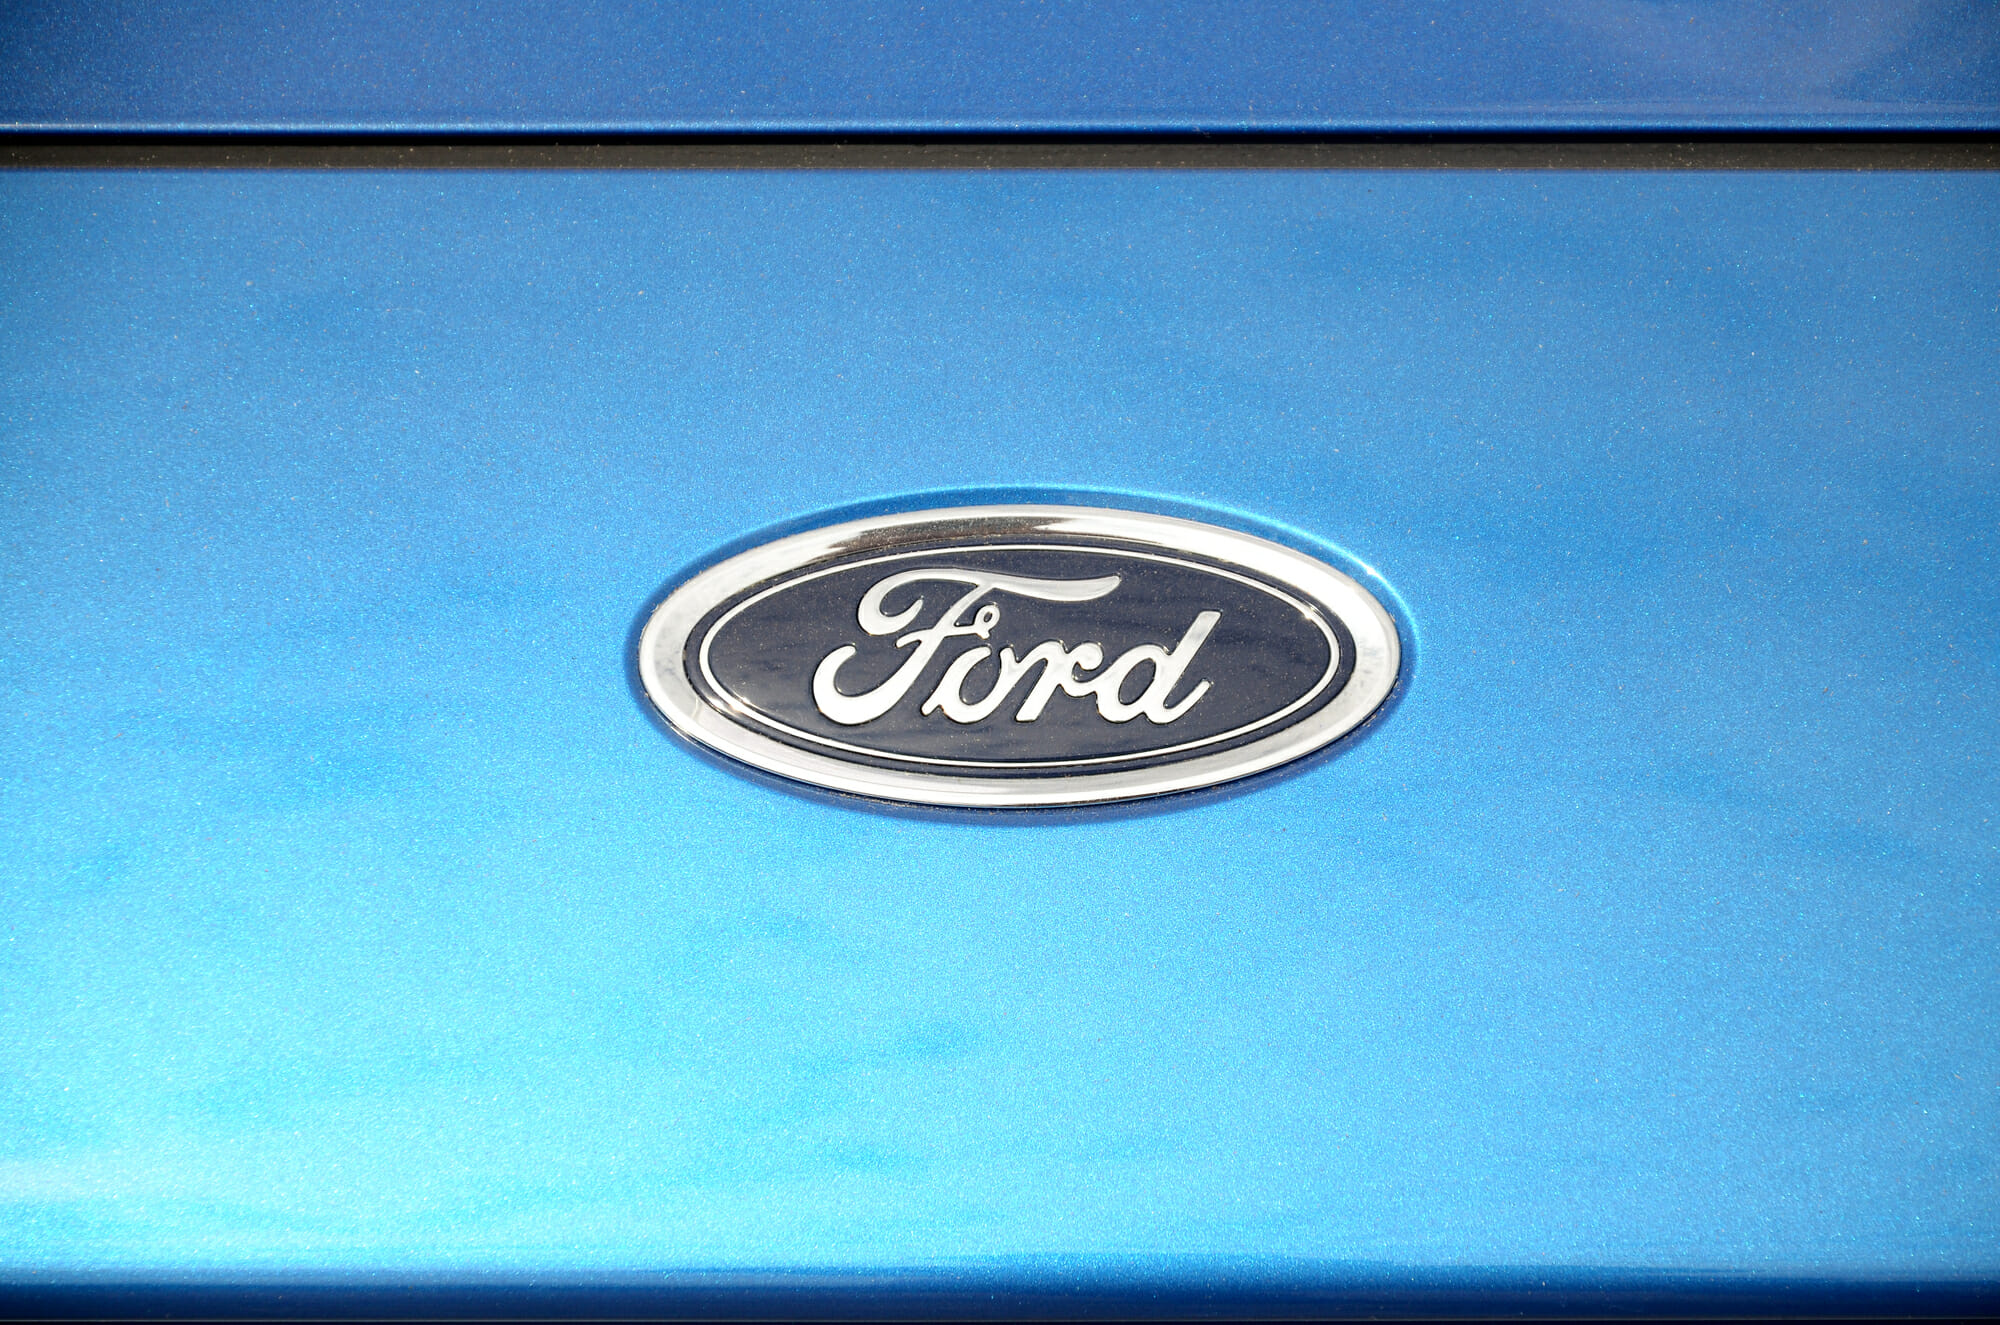 Ford AOD Transmission Problems